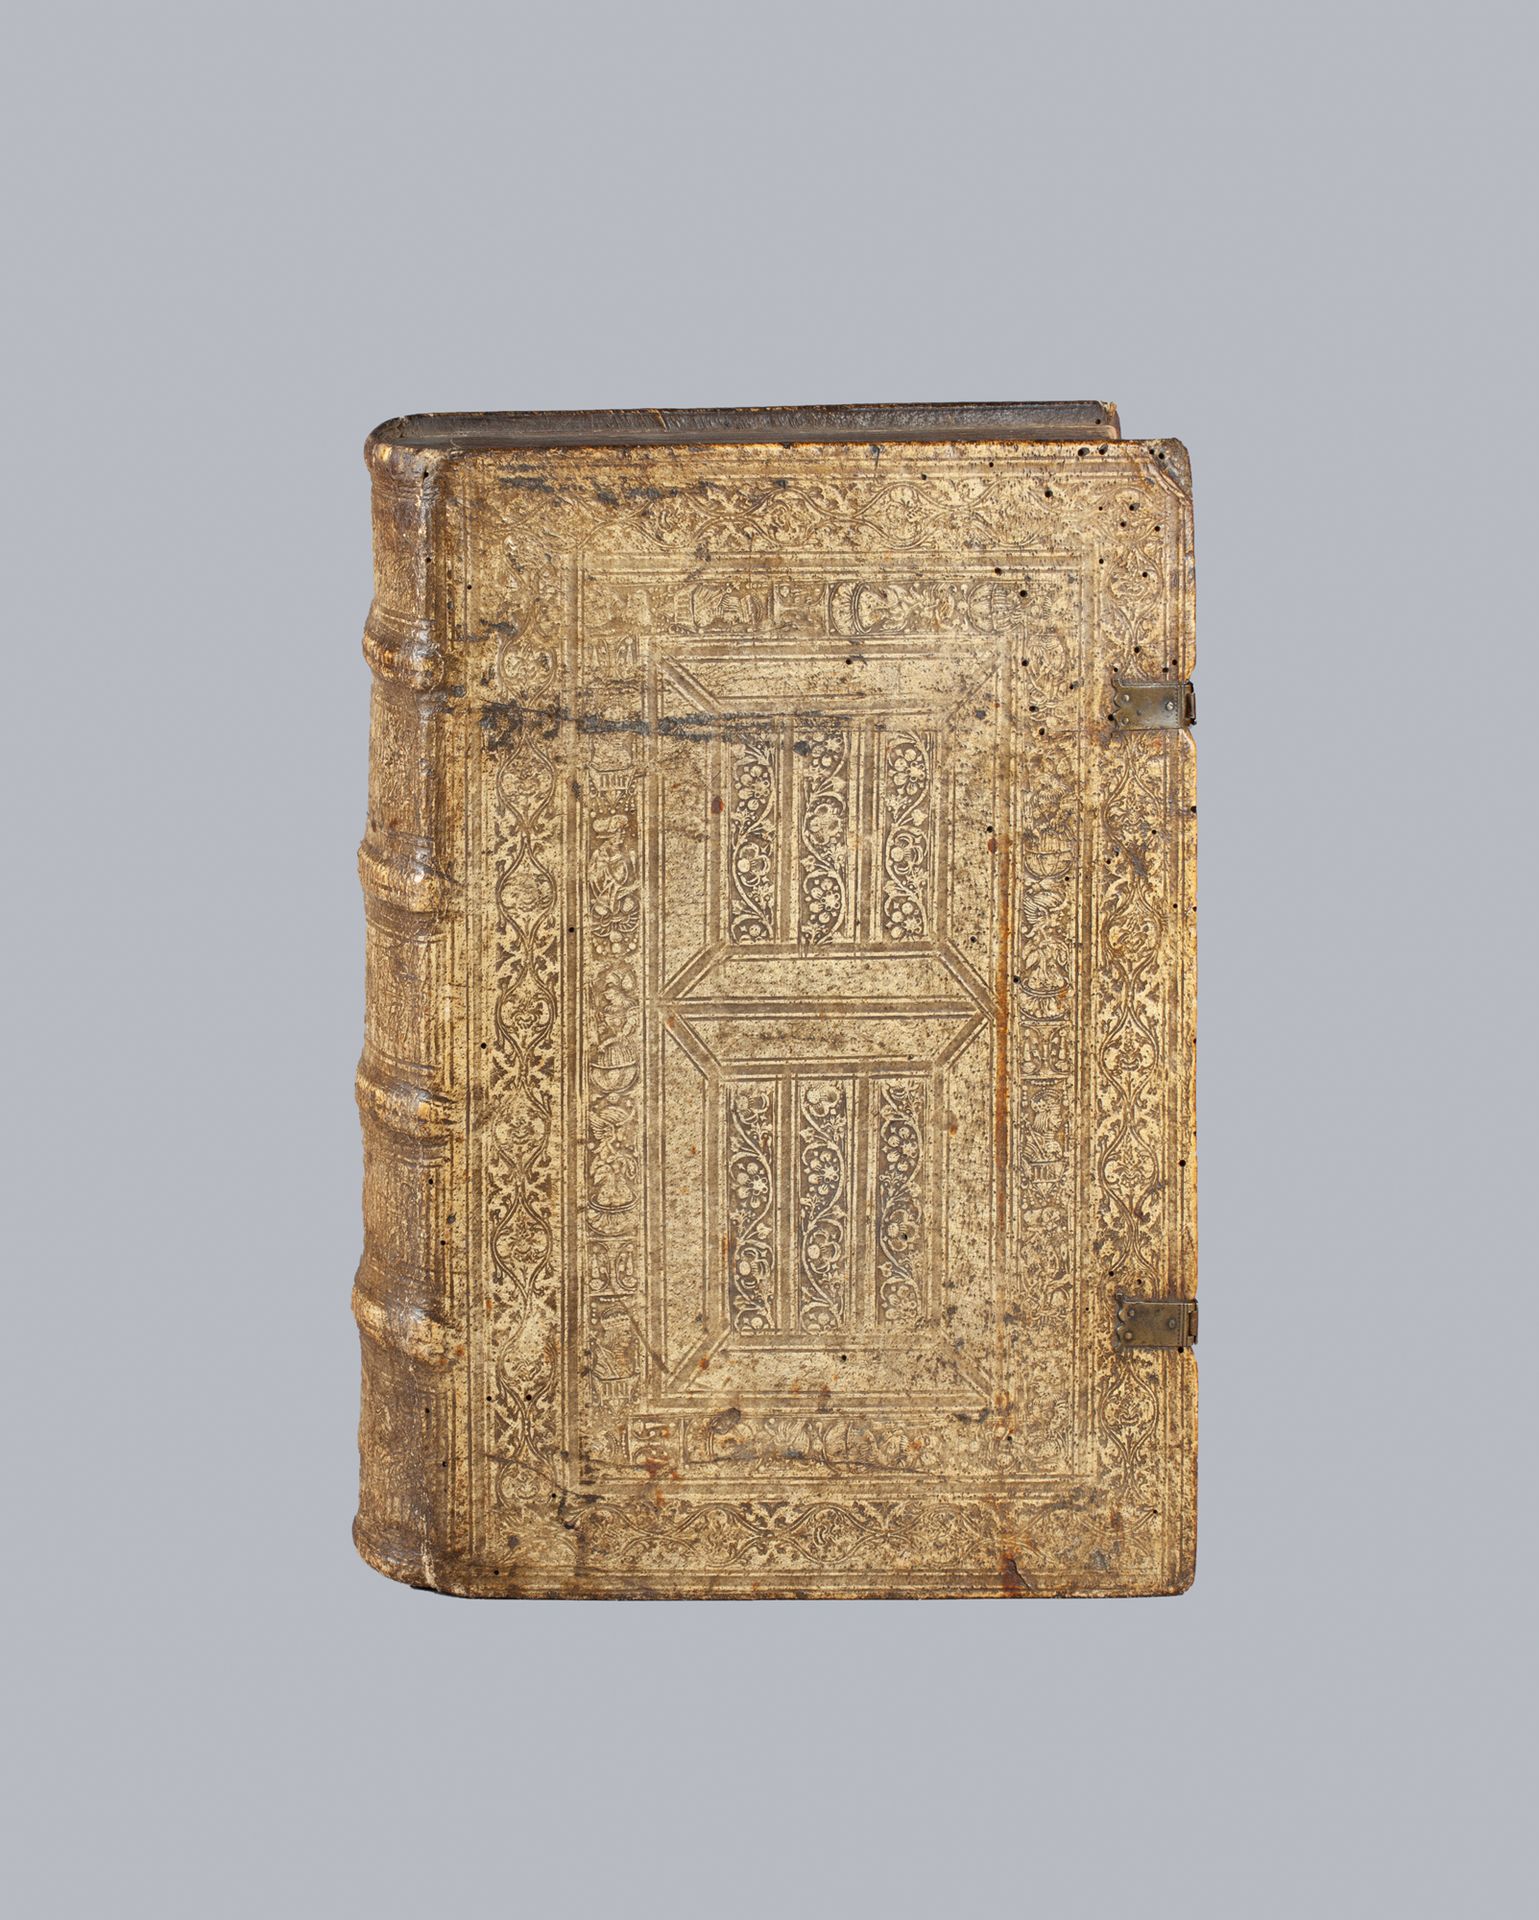 VERGILE (Polydore). De rerum inventoribus libri octo. Basilea, Jean Froben, 1525&hellip;